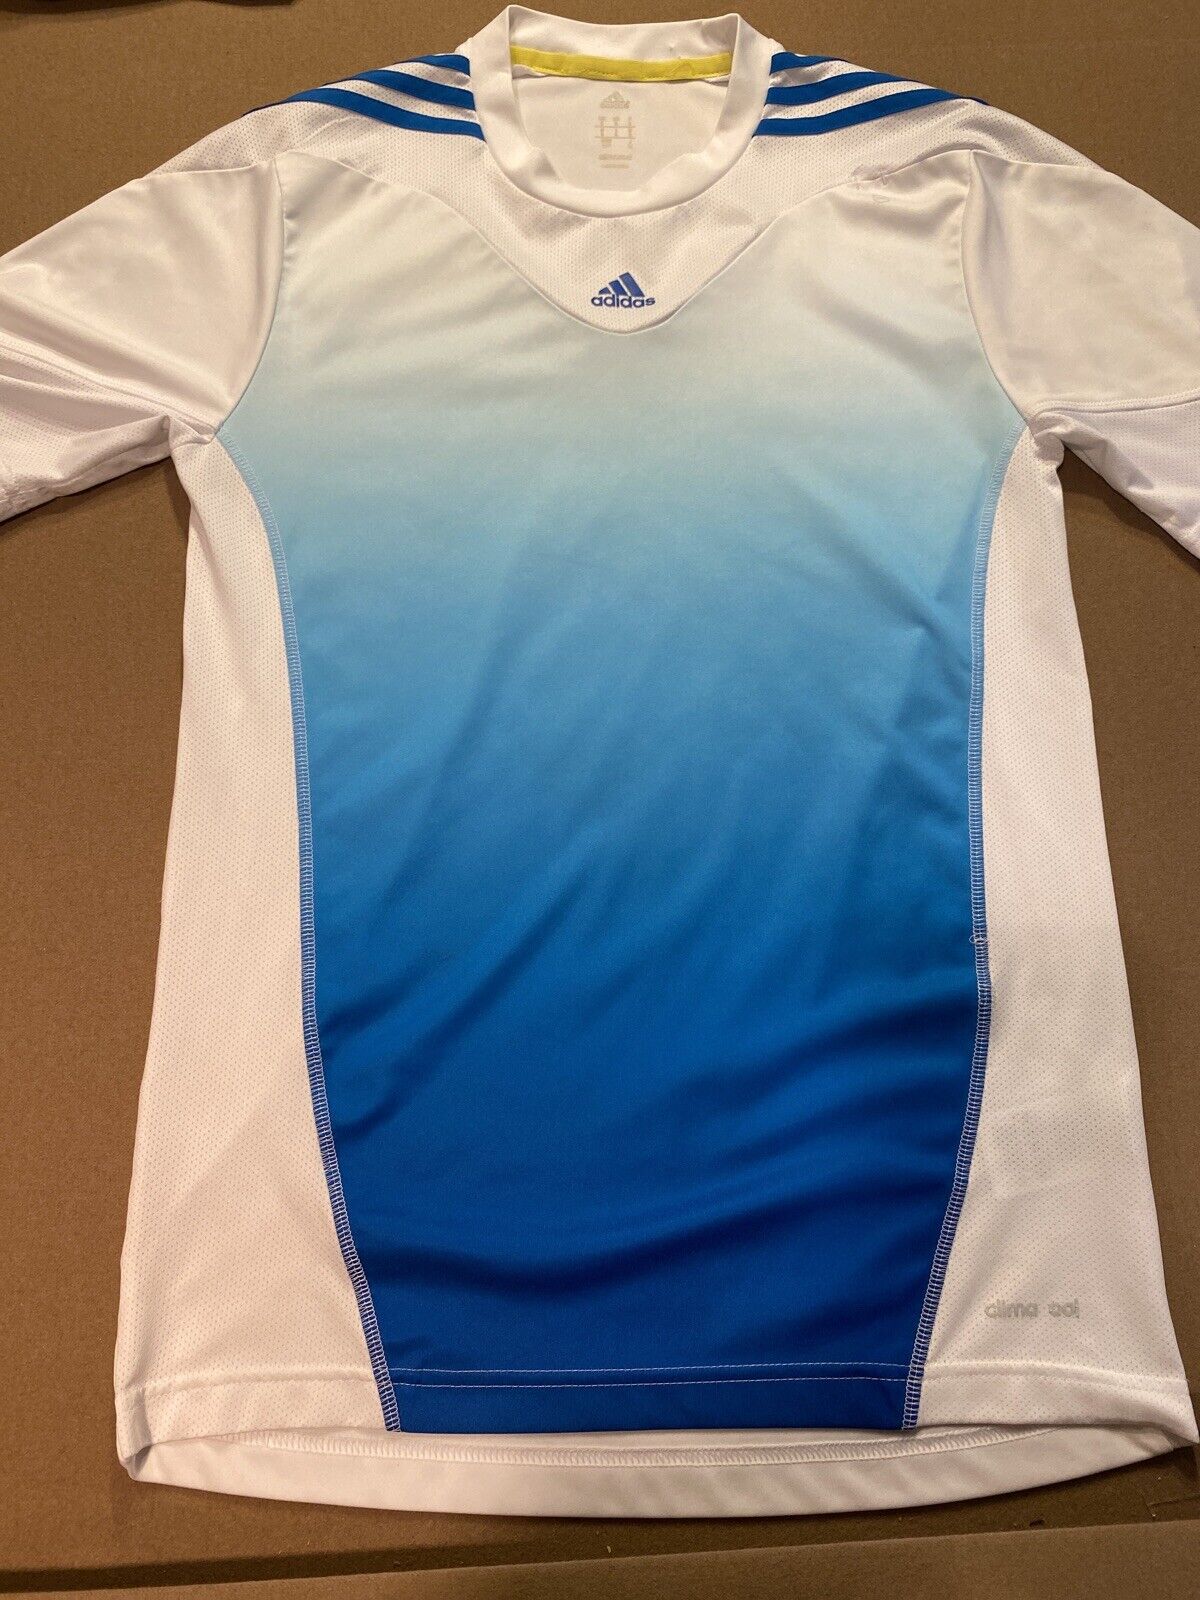 Bestuiver idioom fluit Adidas Predator ClimaCool Shirt Men Size Small White Soccer Athletic Jersey  Vtg | eBay